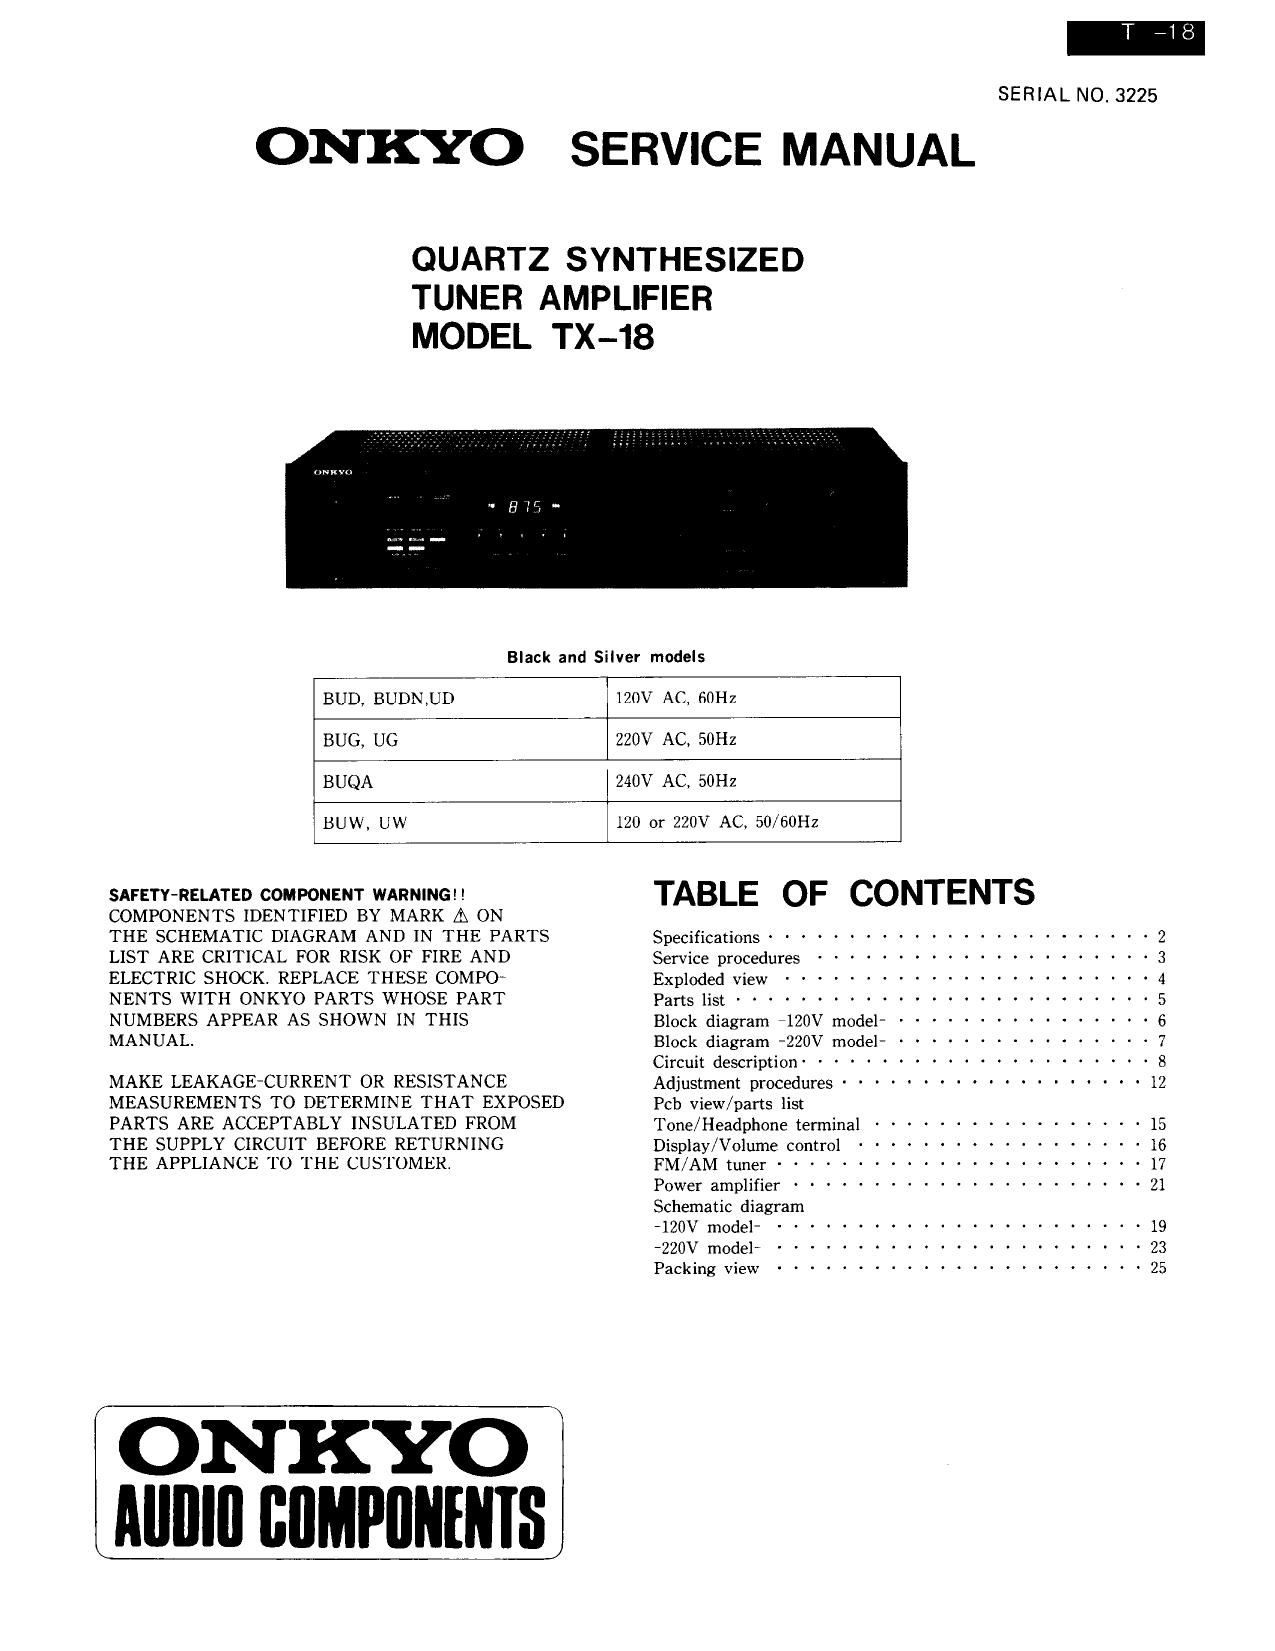 Onkyo TX 18 Service Manual